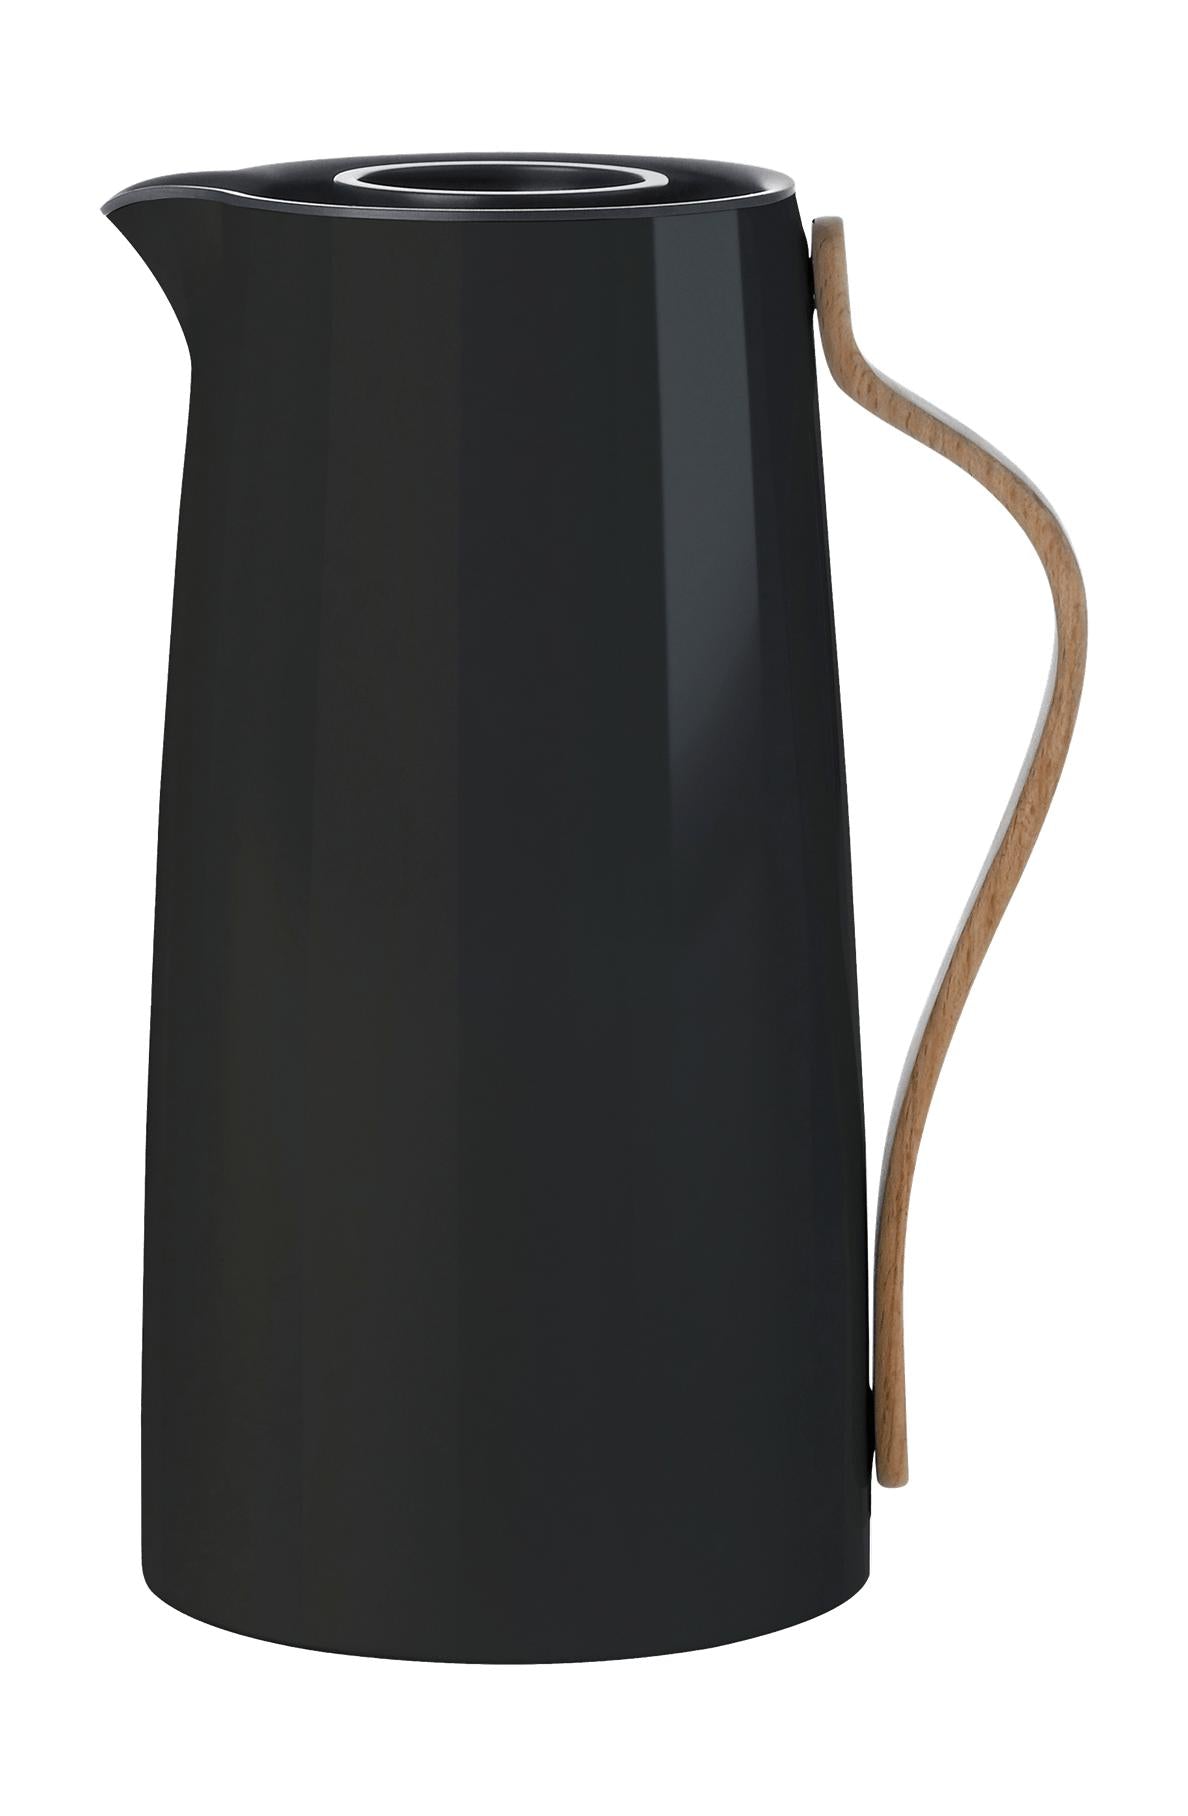 Stelton Emma vakuumkanna kaffe 1,2 L, svart